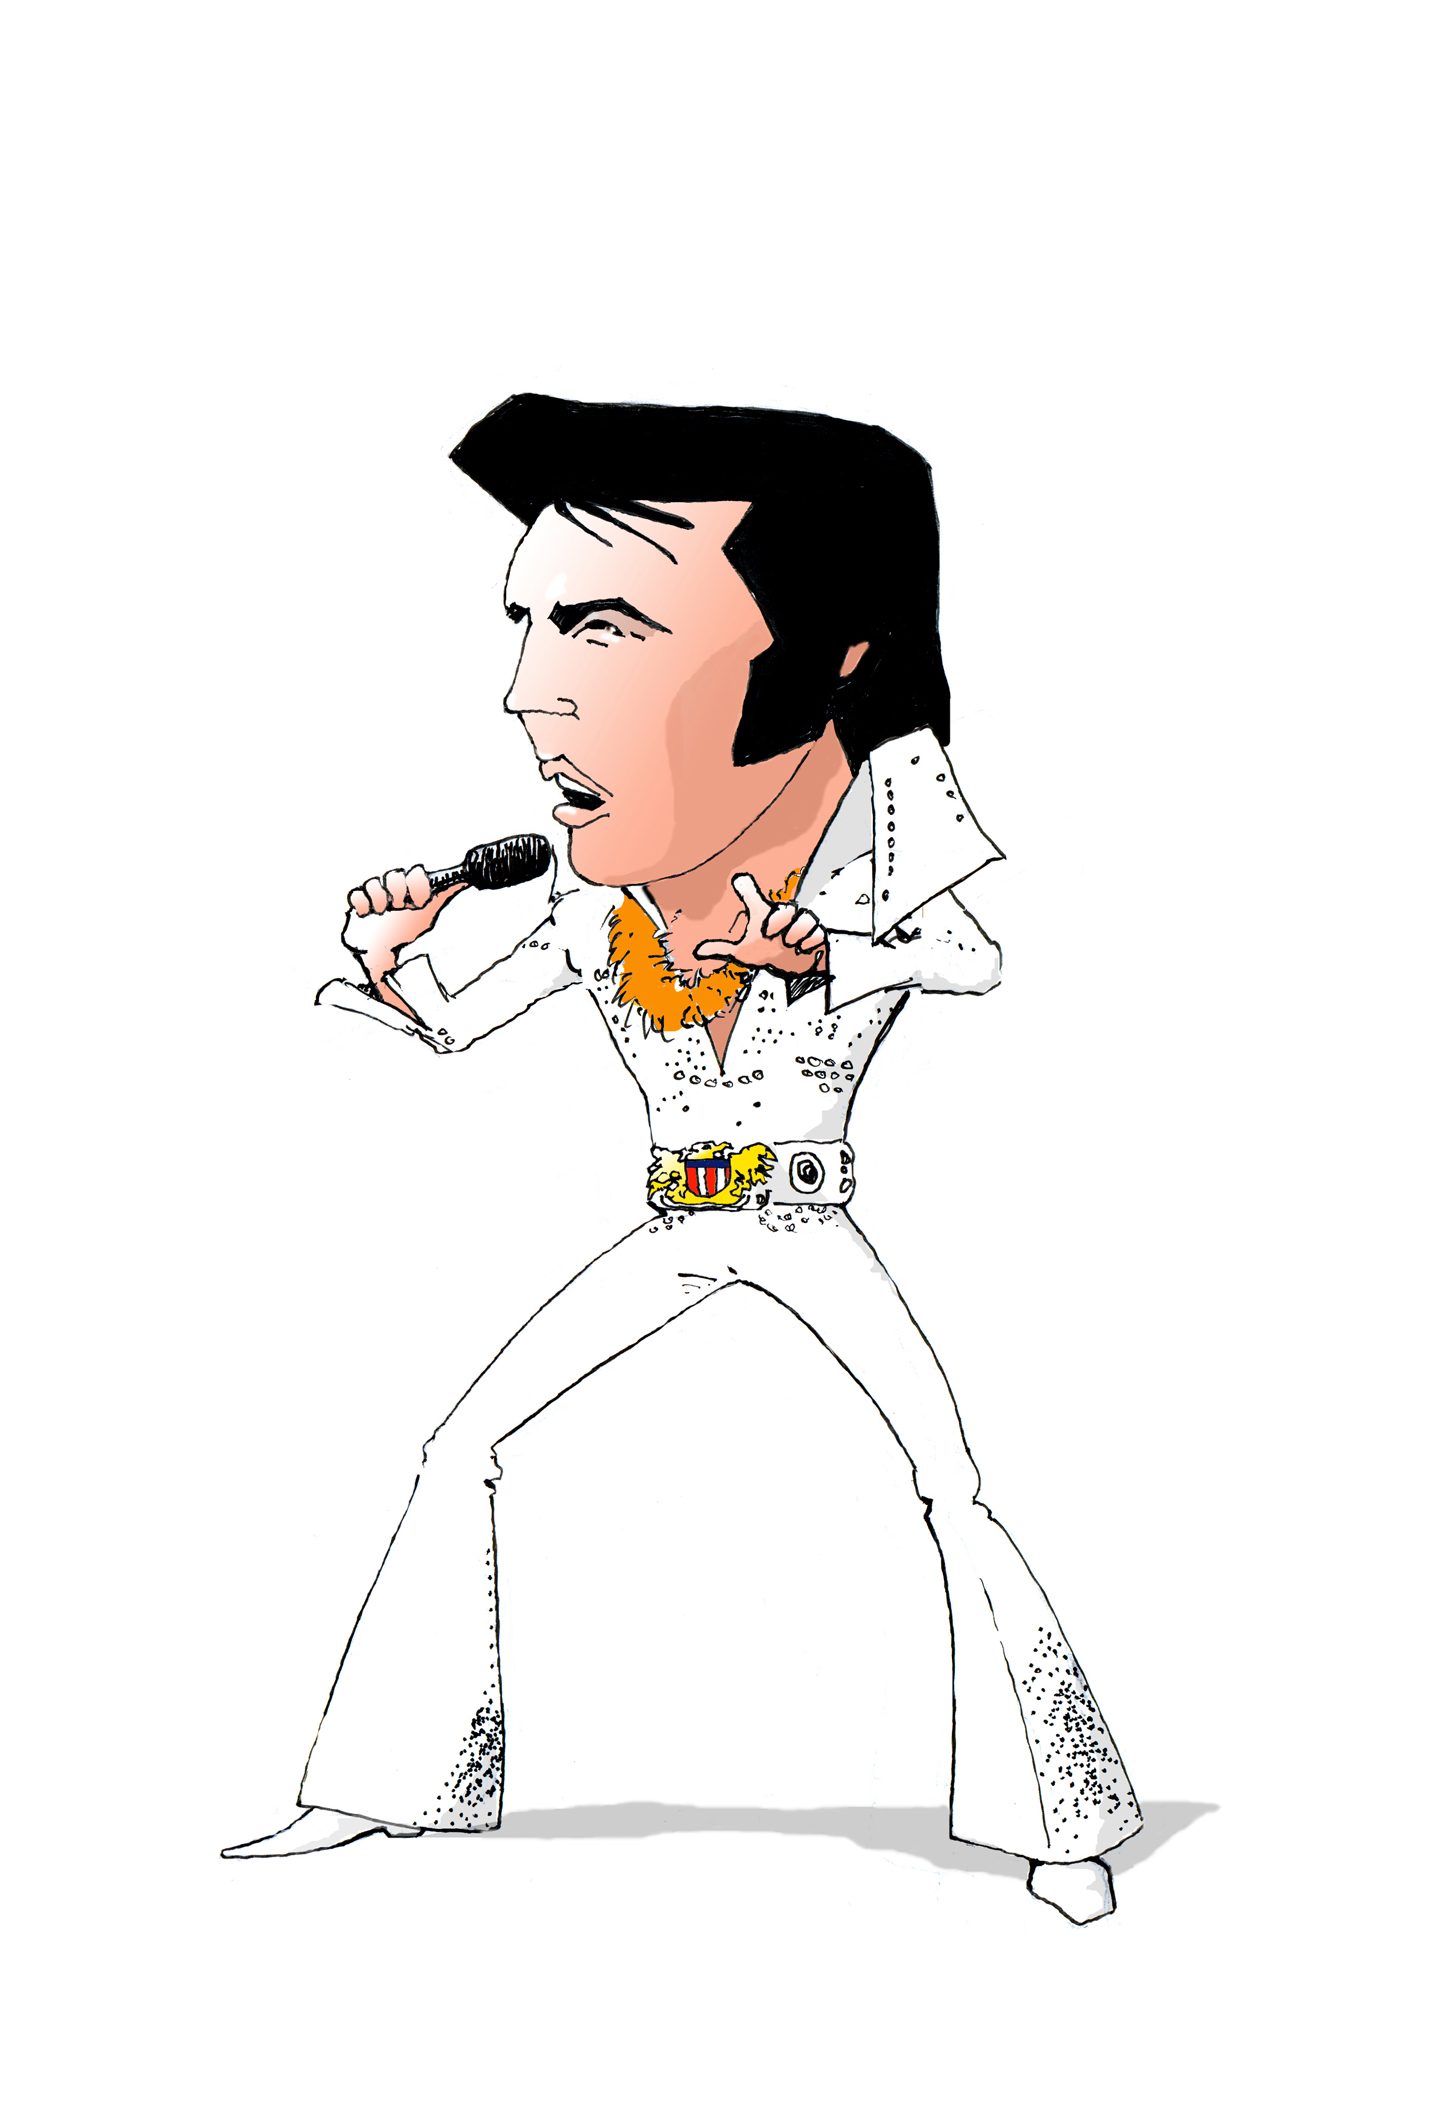 Elvis Presley Cartoon Photos